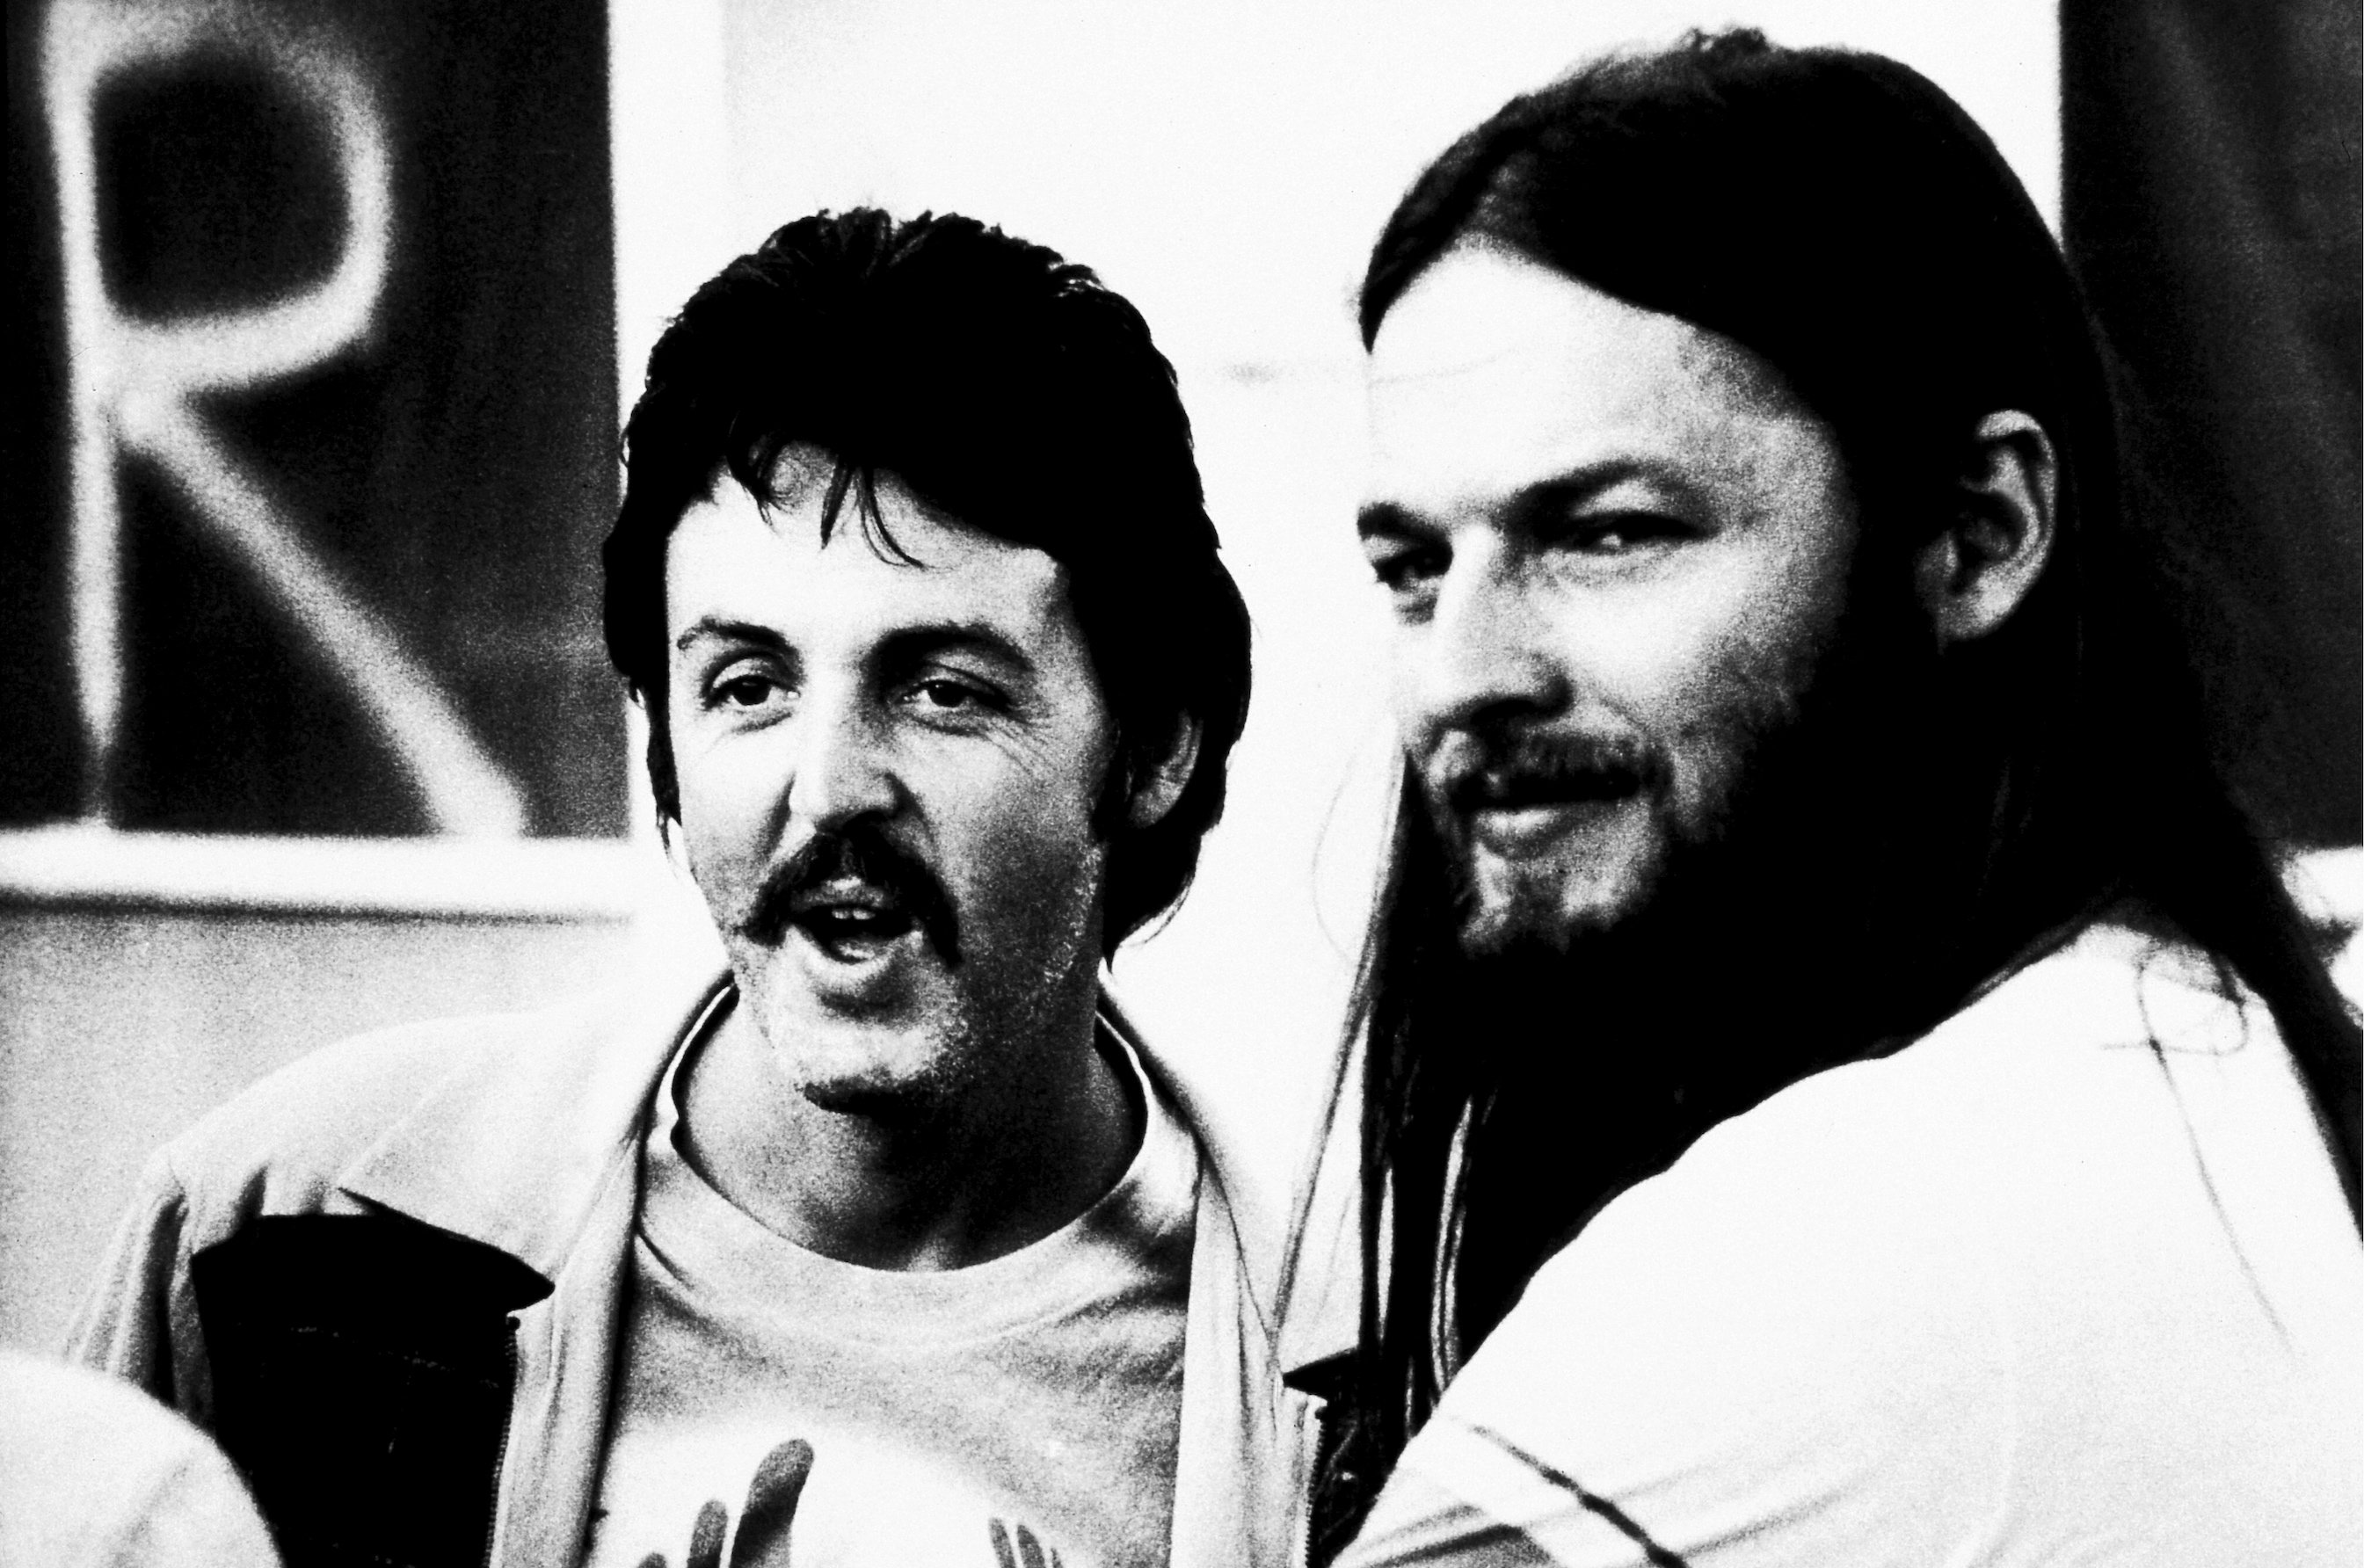 Paul McCartney ha quasi avuto un'apparizione come ospite in "The Dark Side of the Moon" dei Pink Floyd